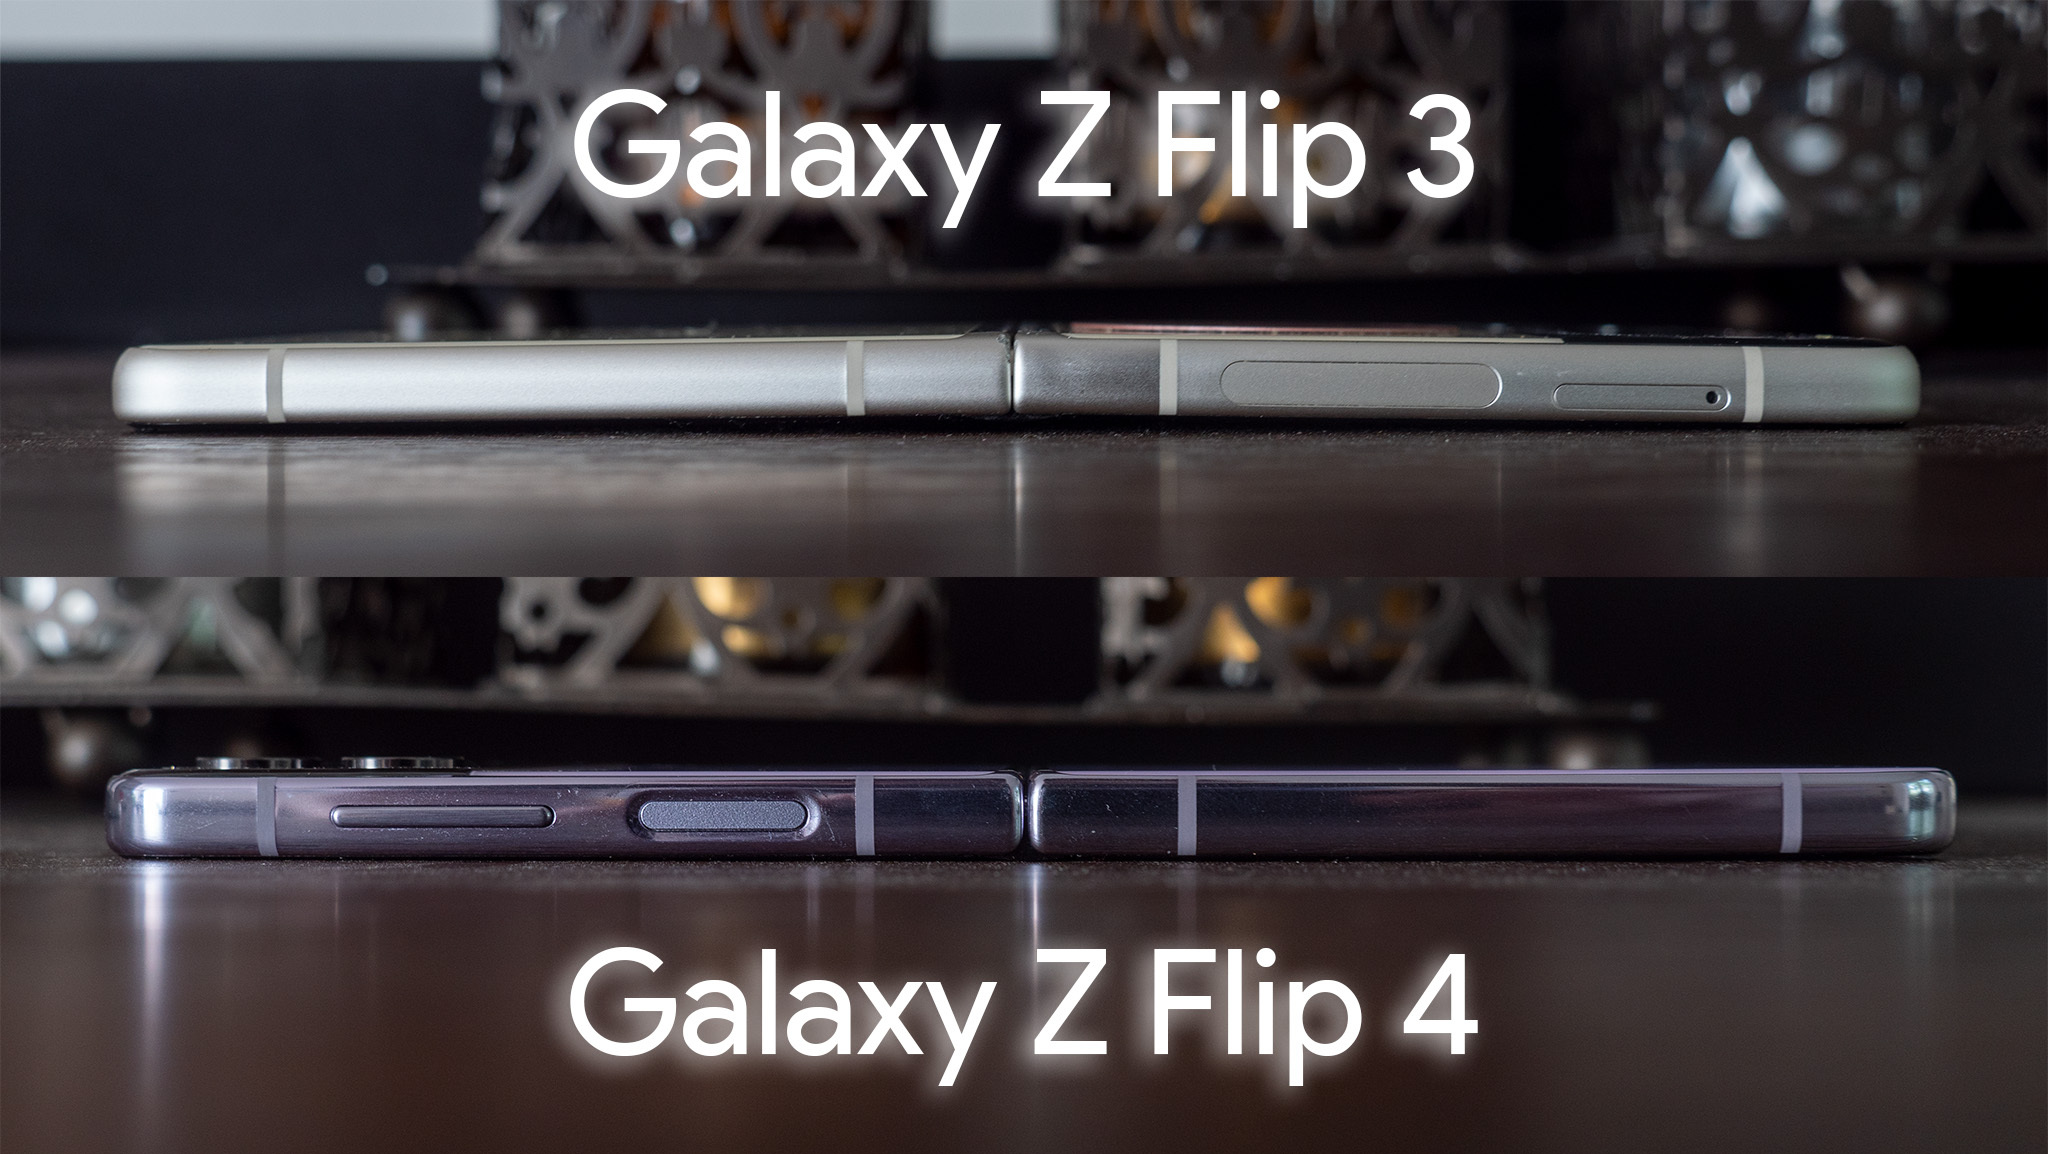 Galaxy Z Flip 4 hinge vs Galaxy Z Flip 3 hinge fully flat